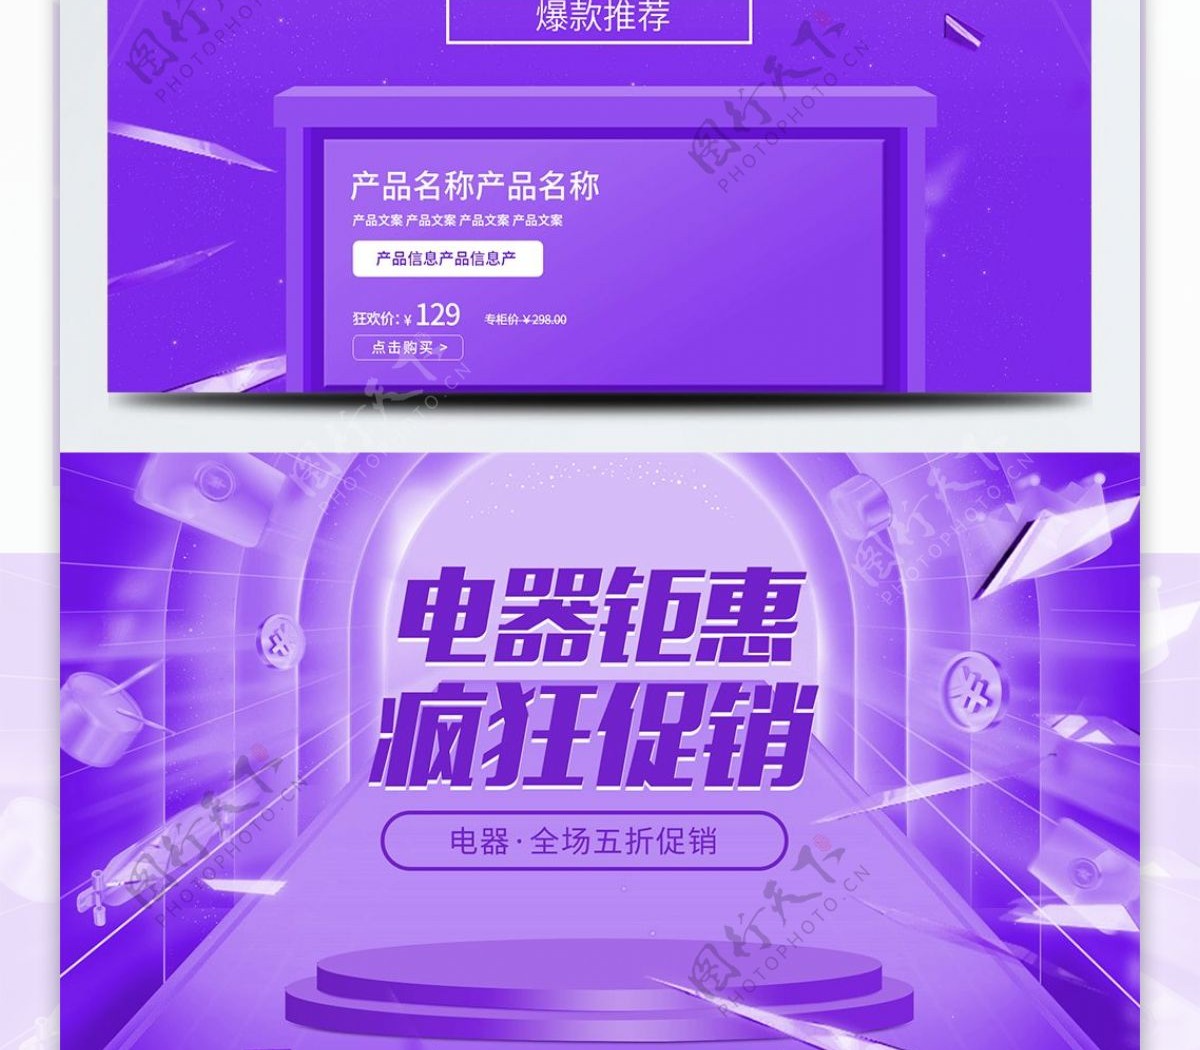 紫色炫酷视觉数码电器促销淘宝首页